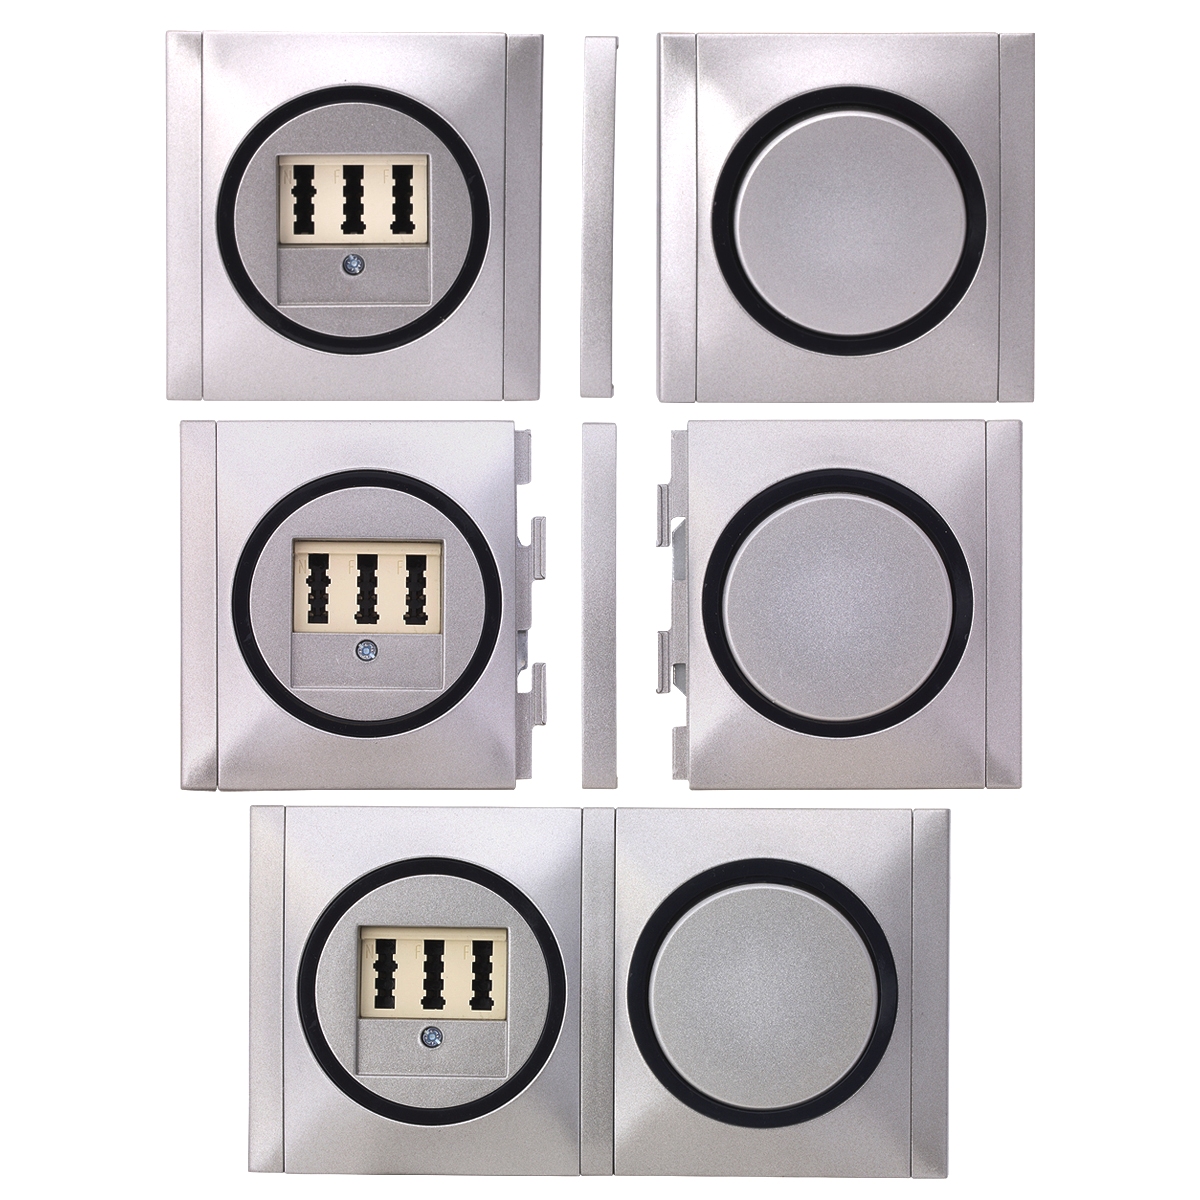 REV Ascoli weiß/schwarz Serienschalter m Rahmen 925104 Lichtschalter Schalter